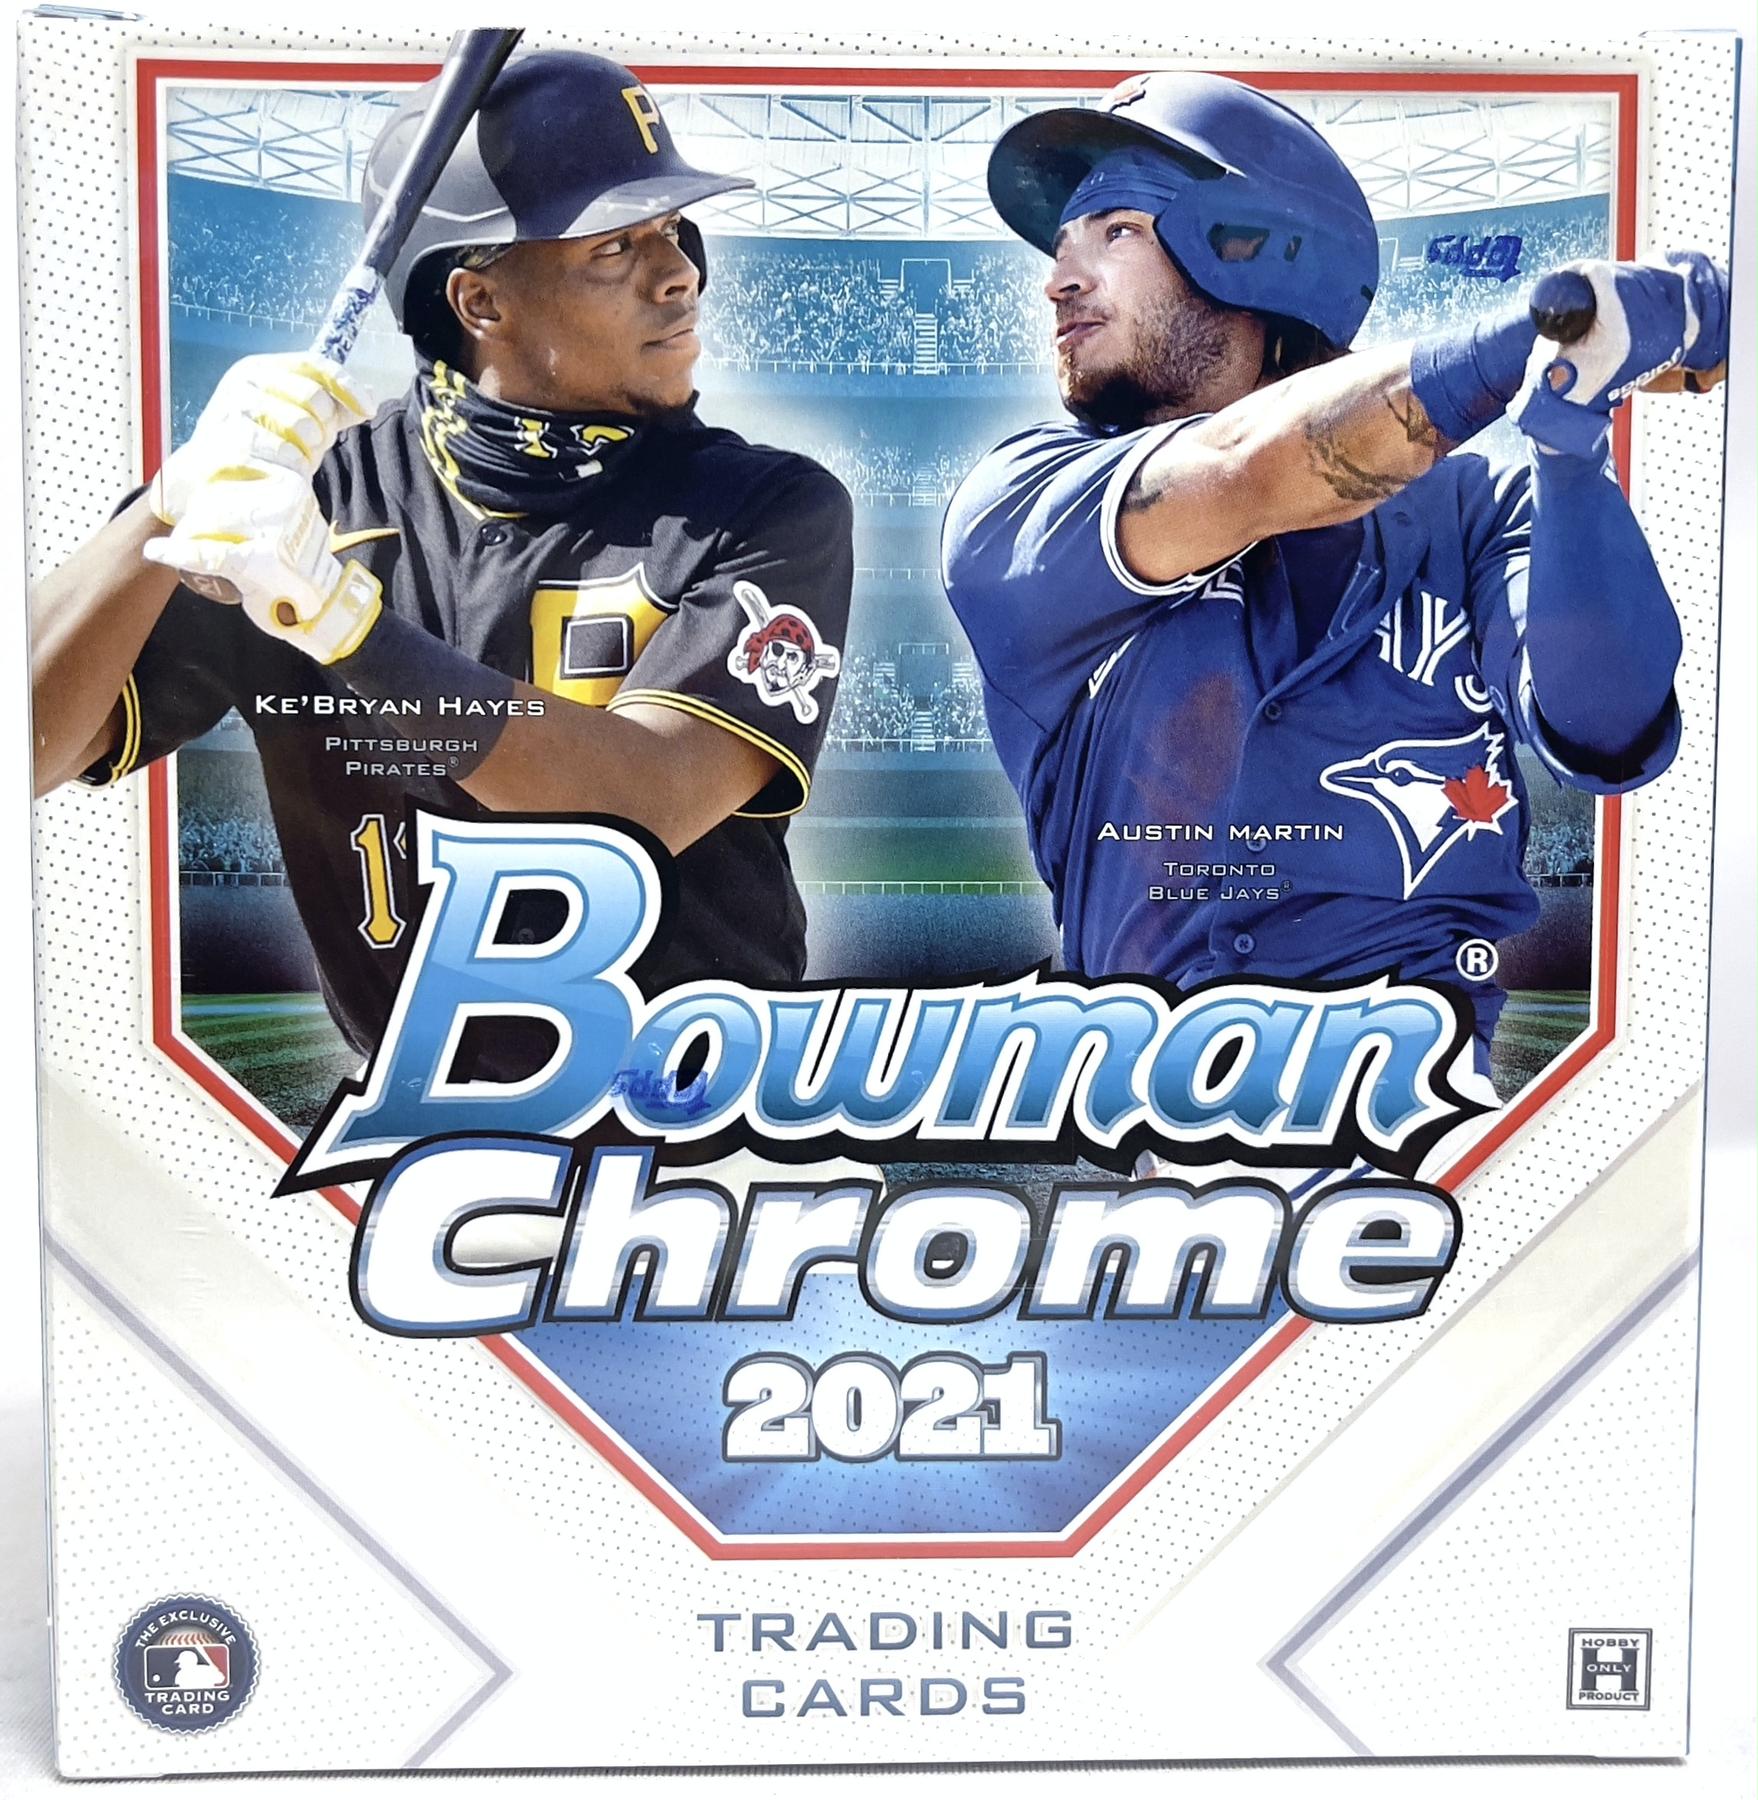 2021 Bowman Chrome Bobby Witt Jr Prospect Baseball Trading Card